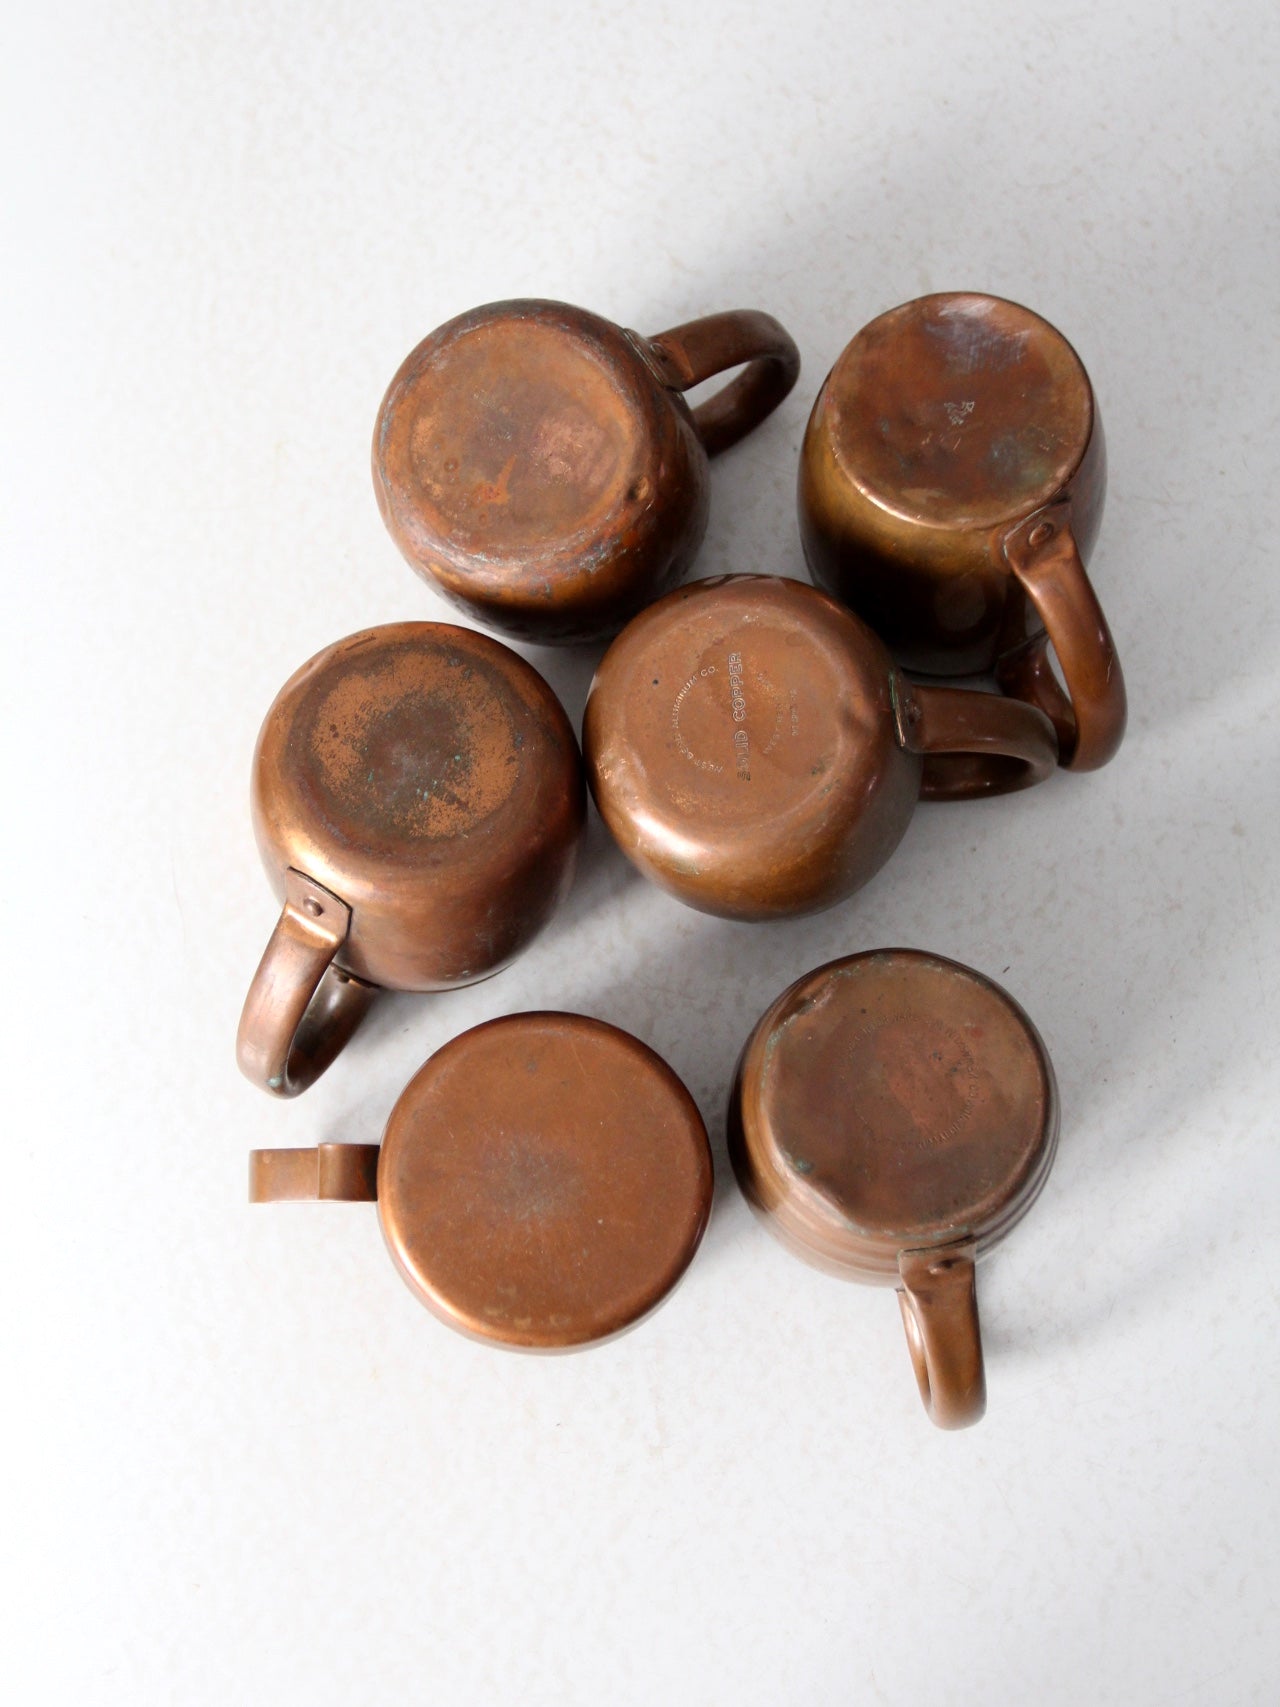 vintage copper mugs set/6